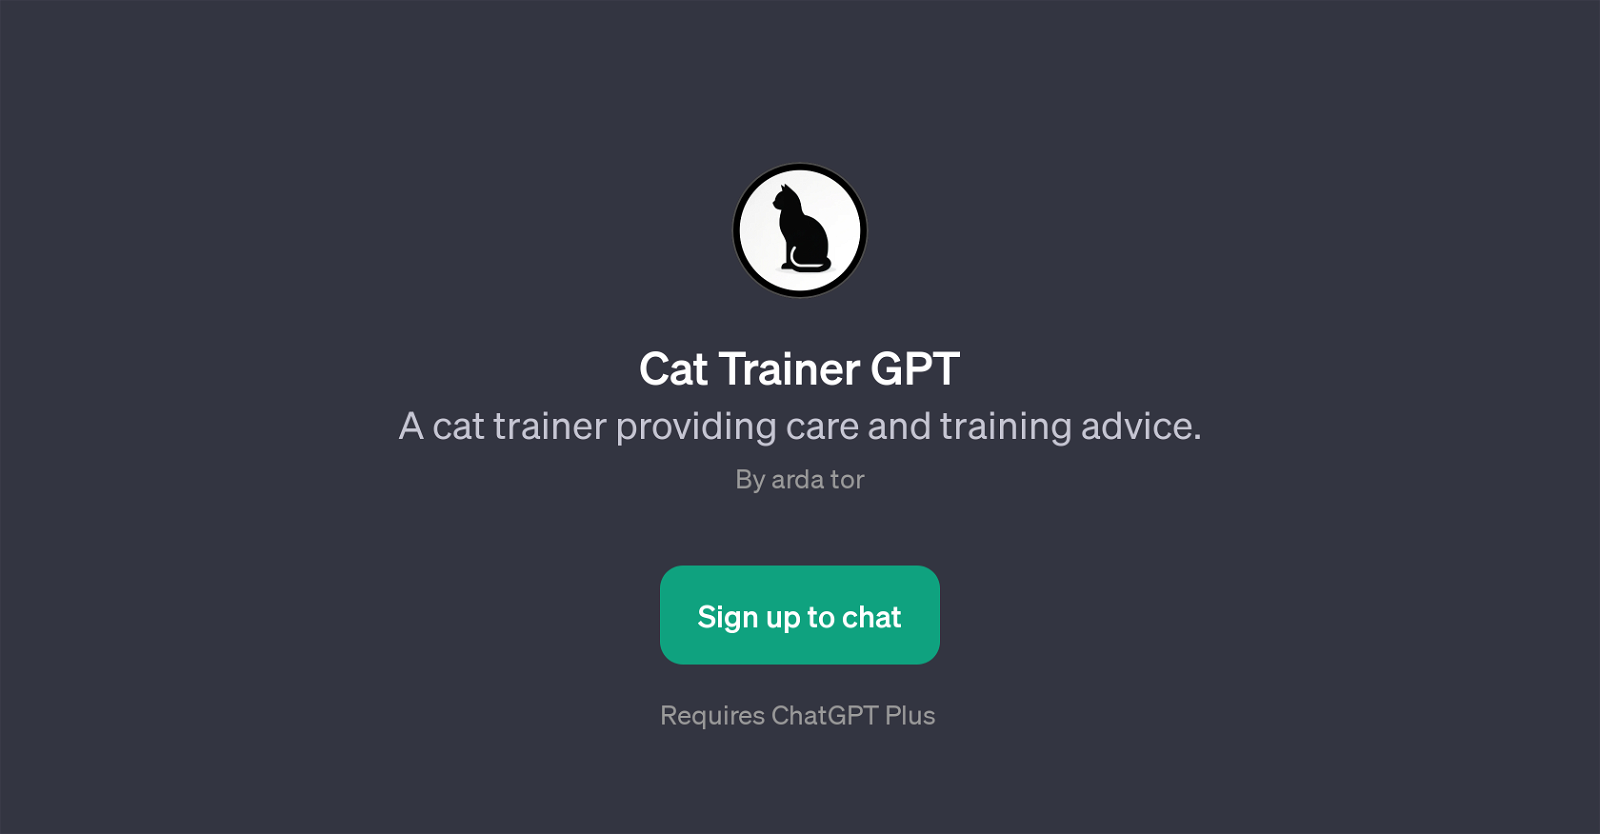 Cat Trainer GPT website